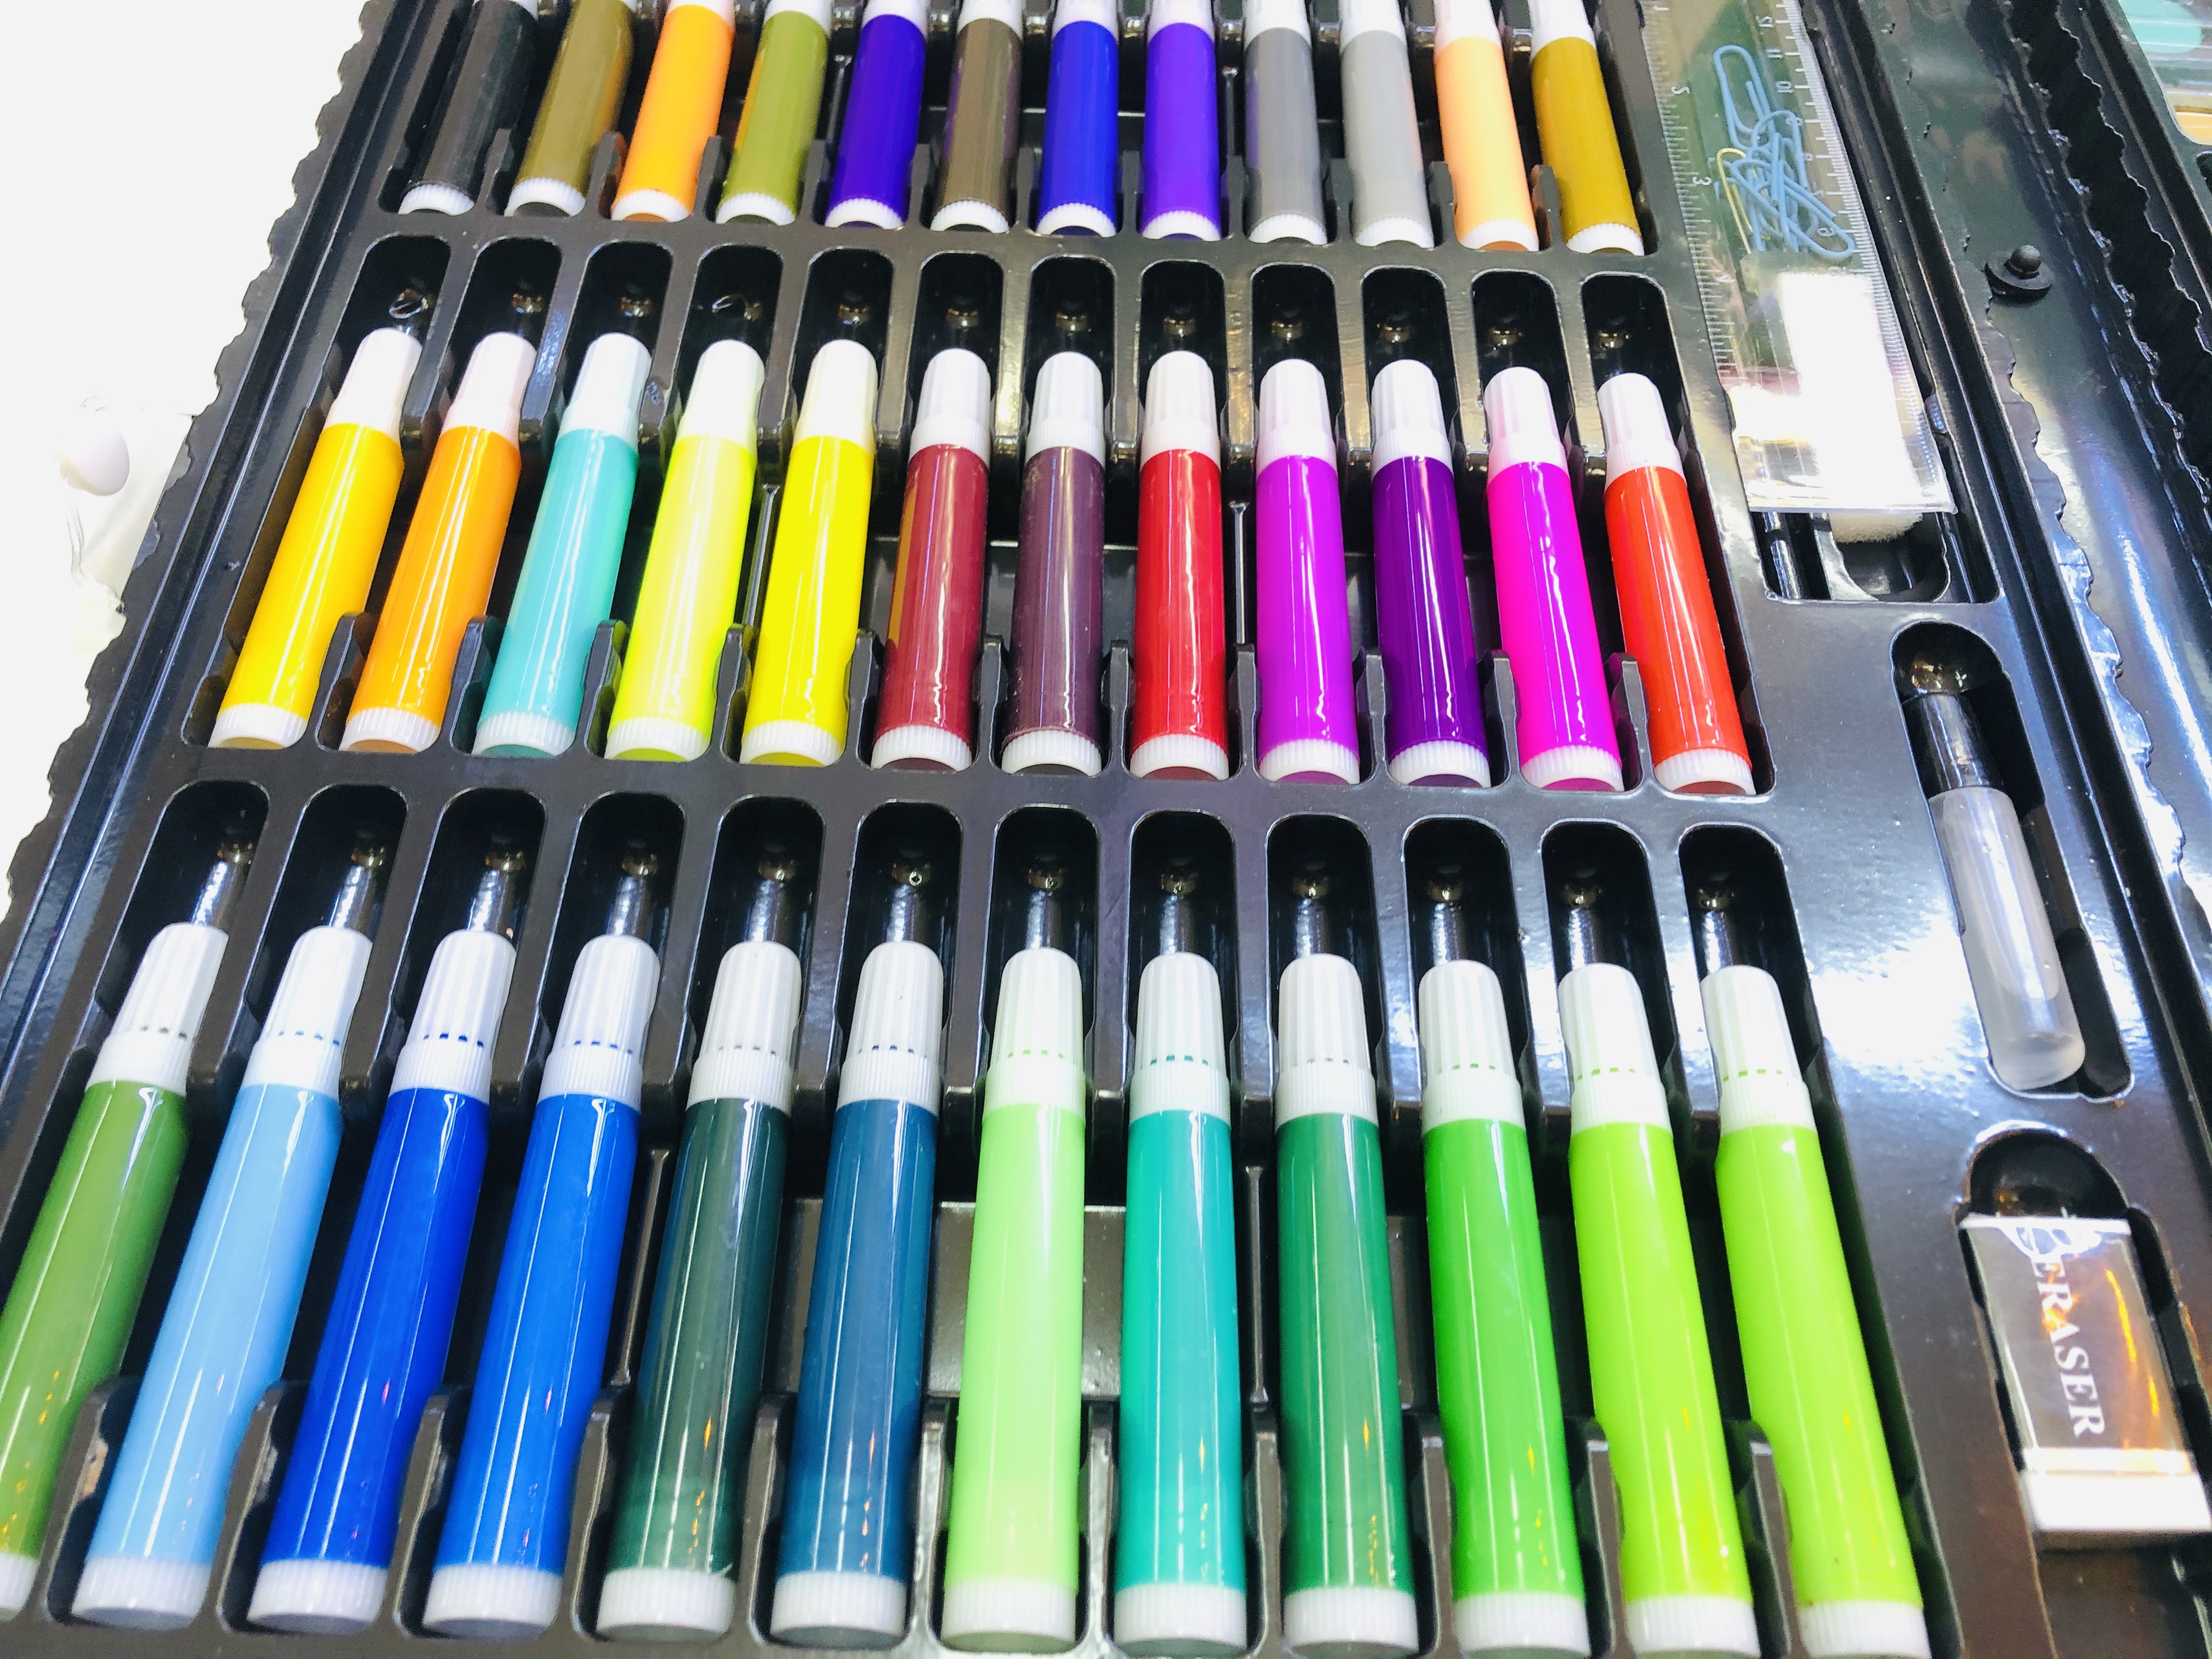 พาเลทชุดระบายสี 150 ชื้น แถมสมุดภาพระบายสี 1 เล่มฟรีสี สีไม้ สีน้ำ สีเทียน ดินสอ ยางลบ ไม้บรรทัด  เด็ก